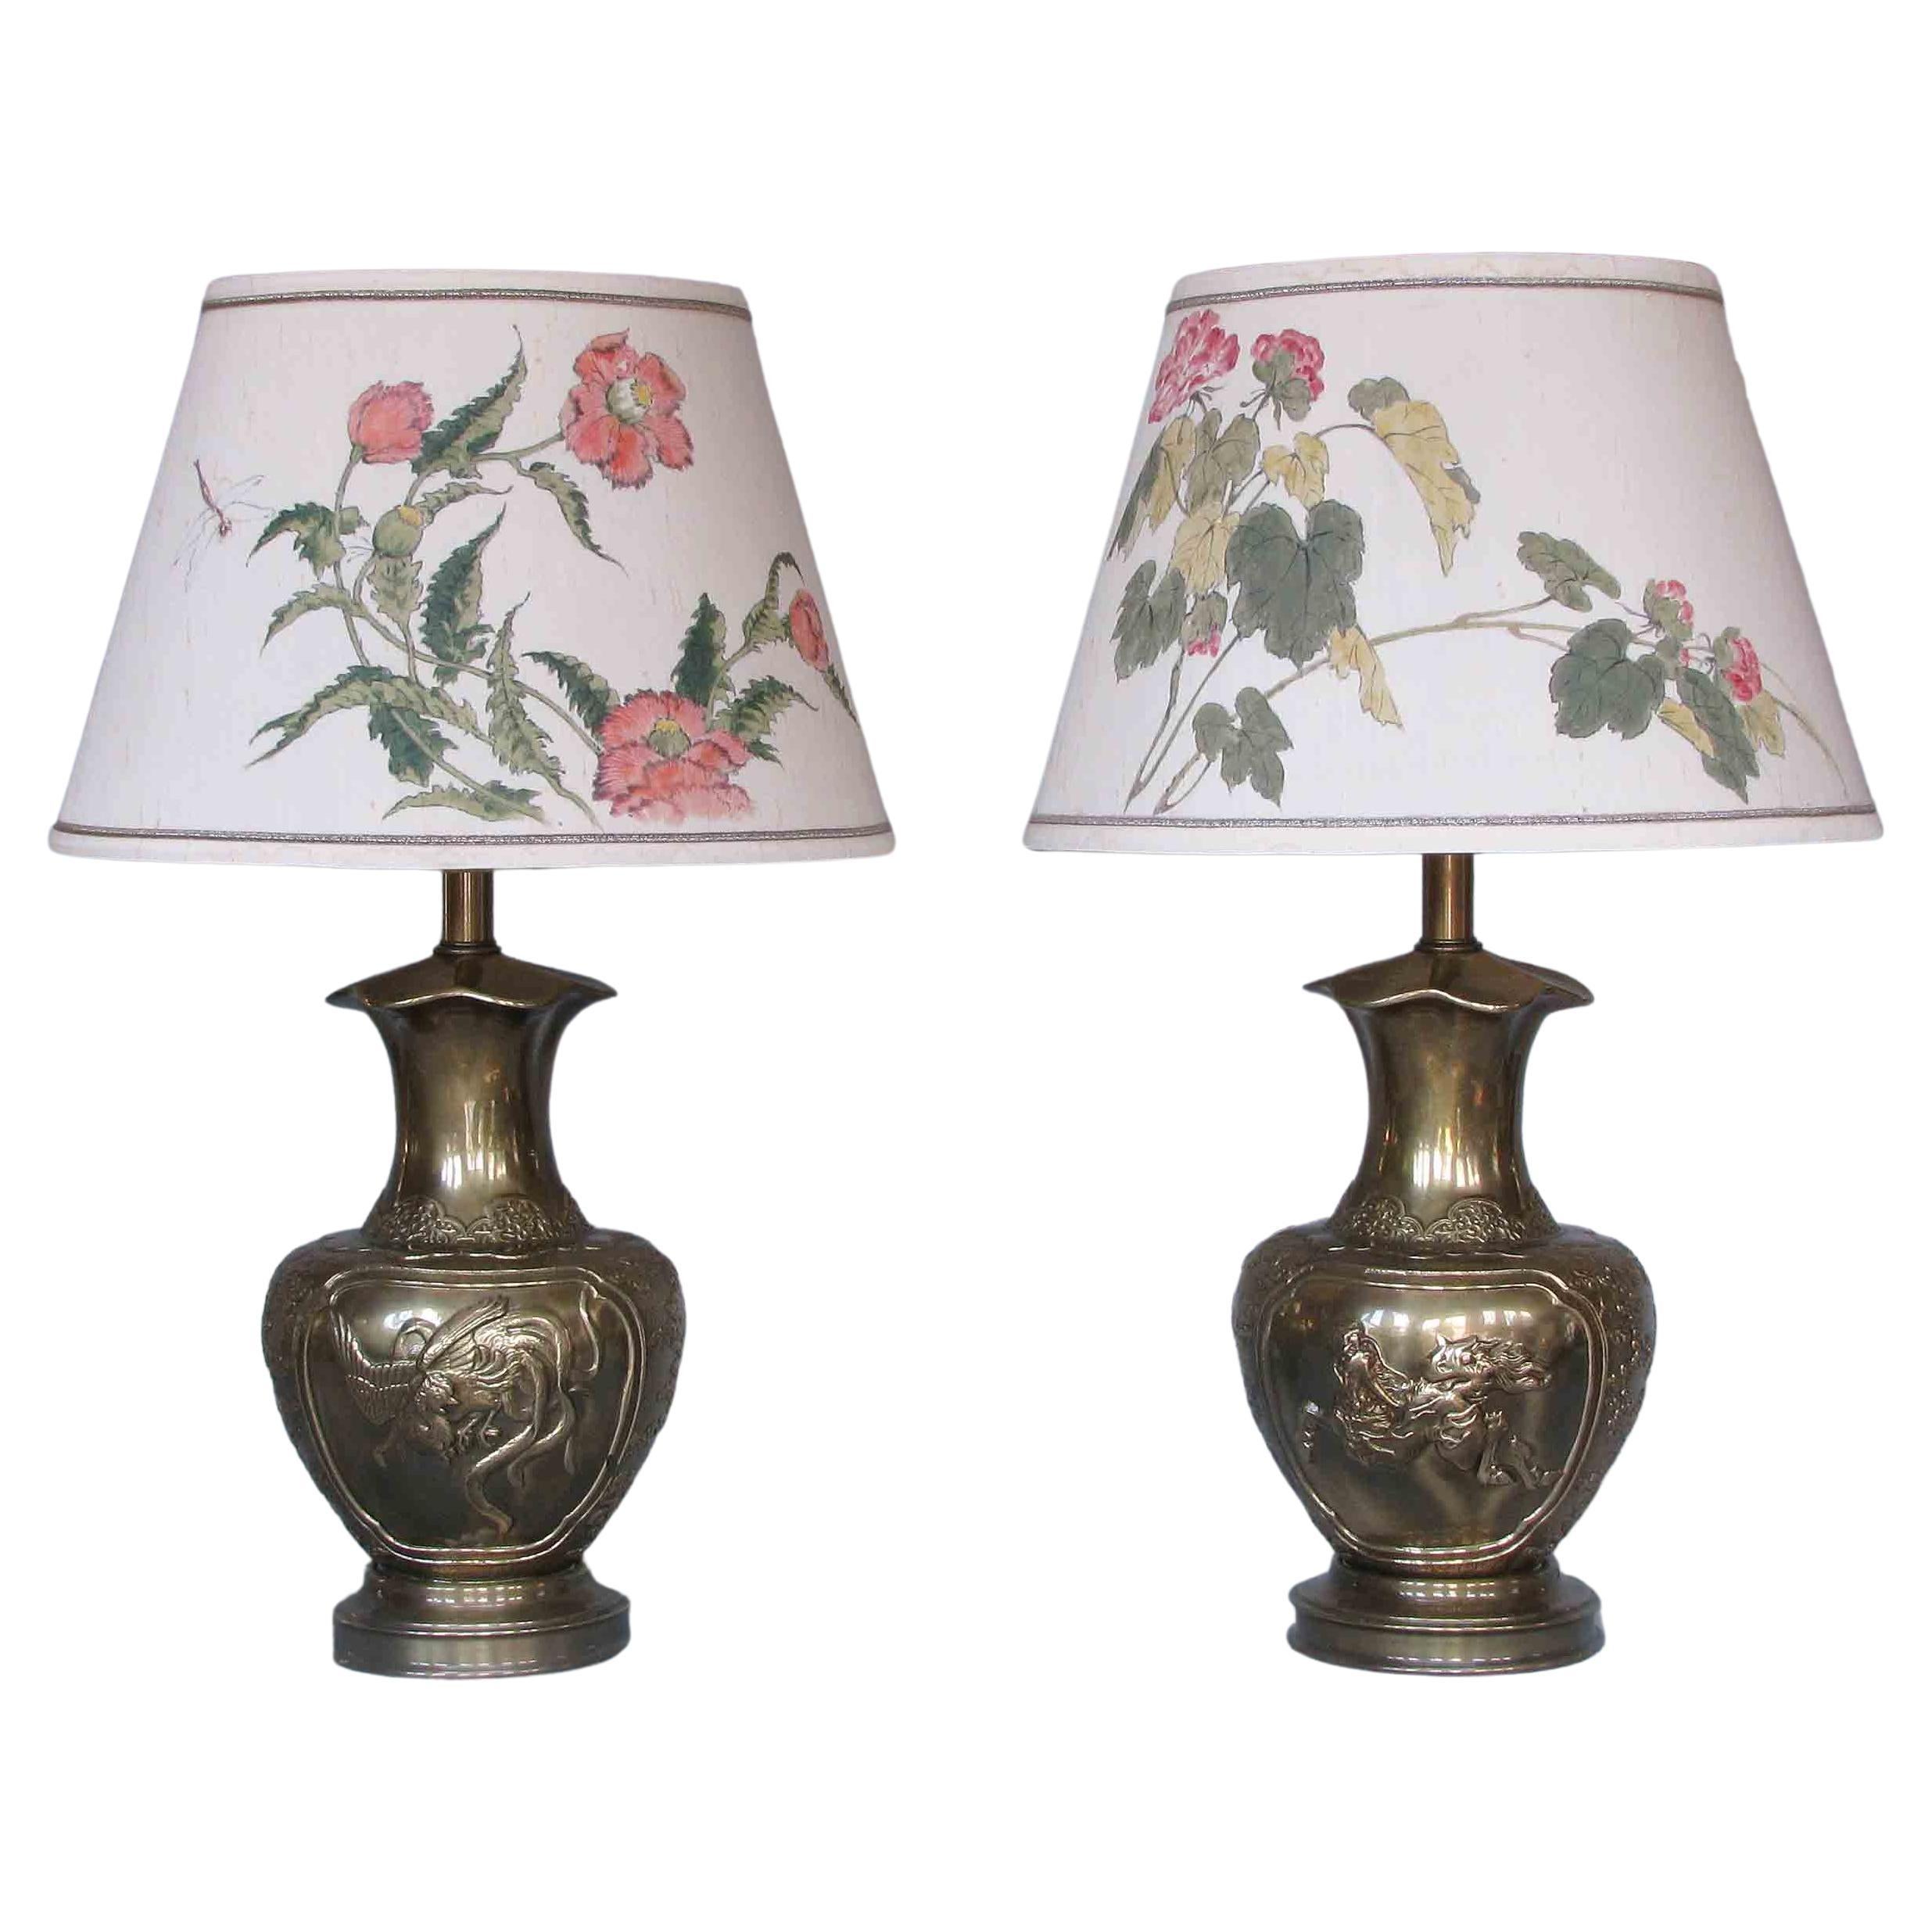 Dekorative Tischlampen im japanischen Stil von Tyndale für Frederick Cooper Co.